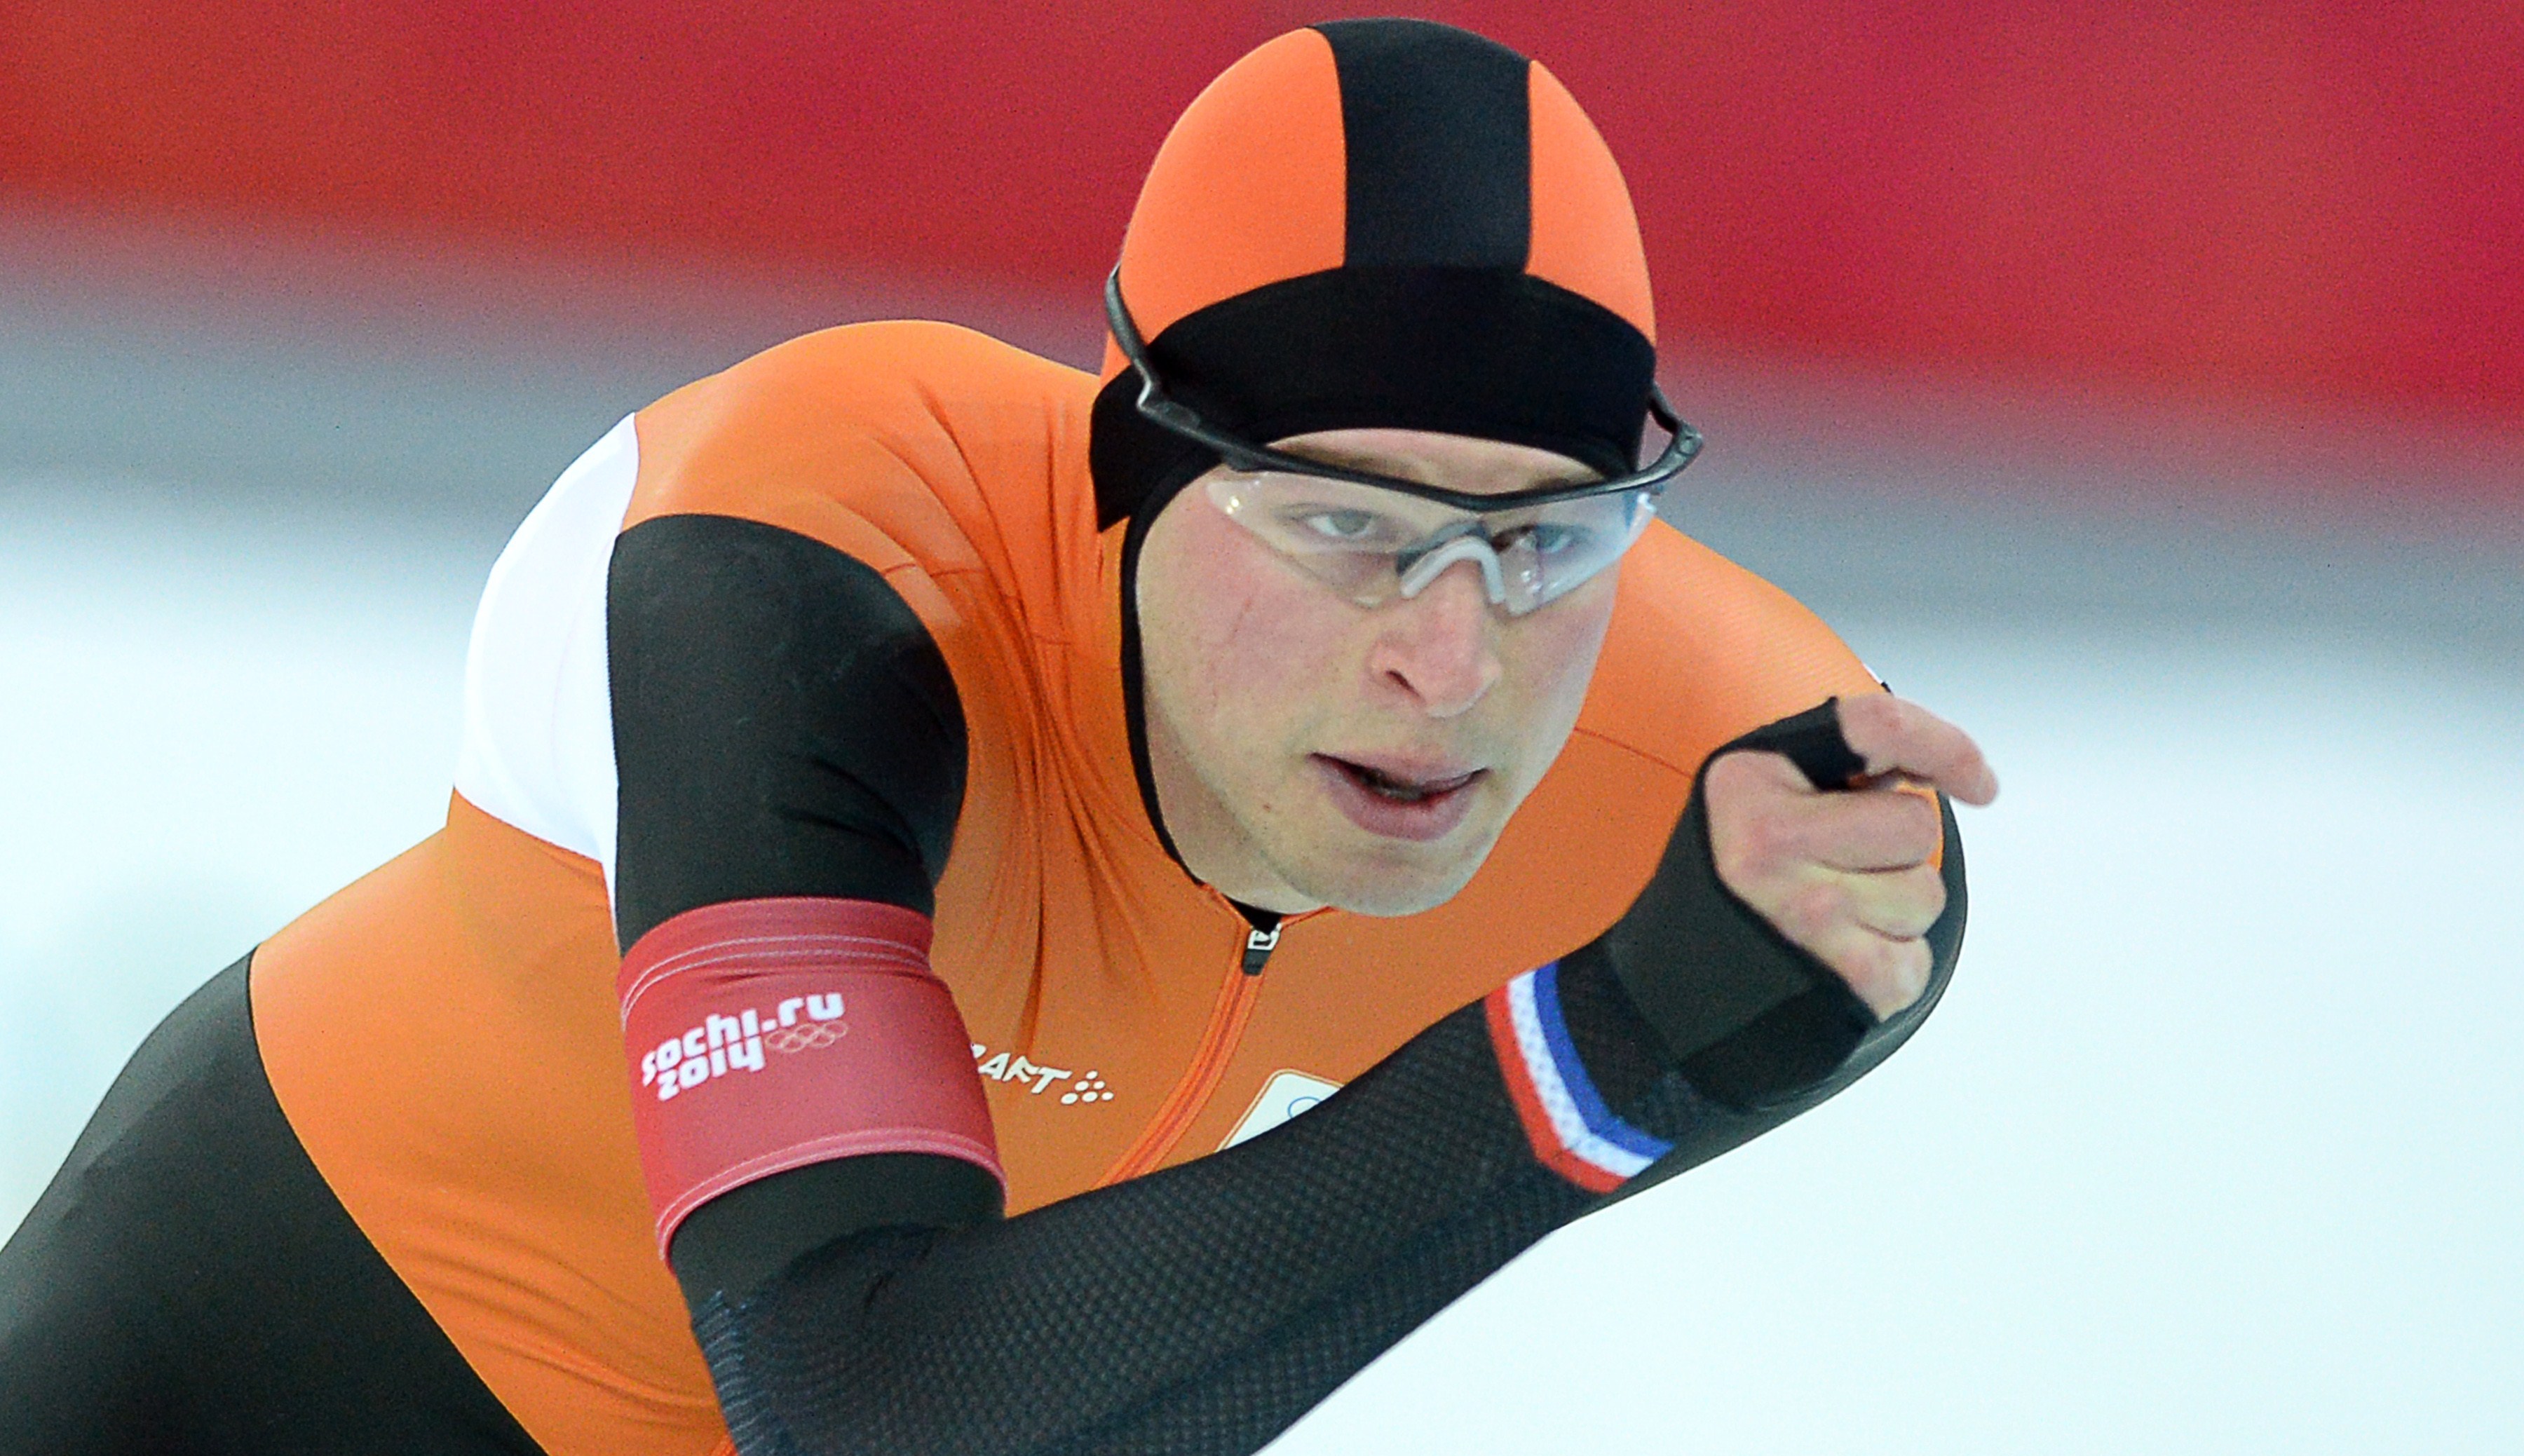 herstel Kent cabine Olympische titel Kramer op 5000 meter | Schaatsen.nl